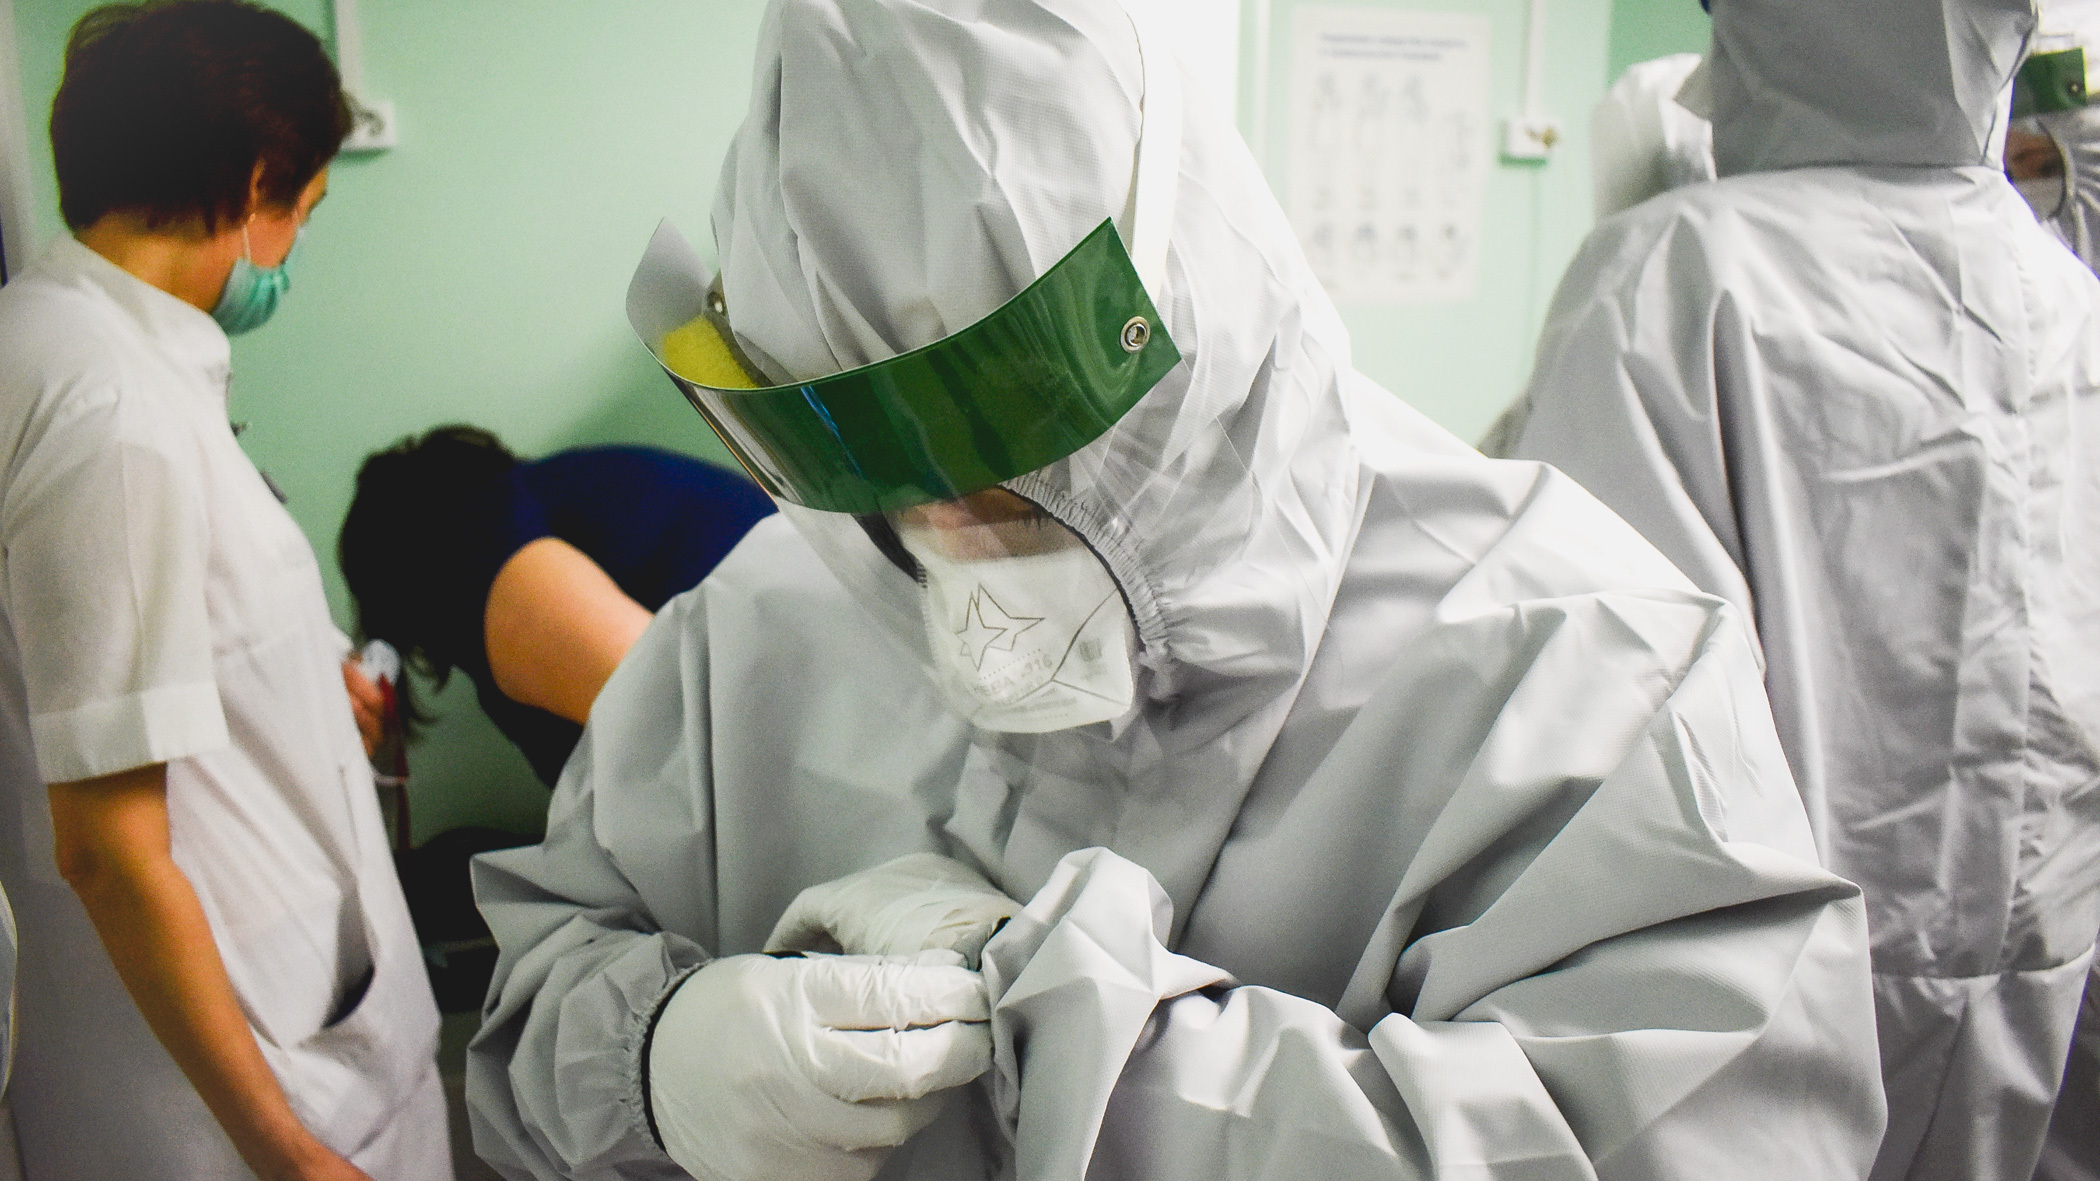 За сутки в Югре зарегистрировали 19 новых случаев коронавируса, умерших нет